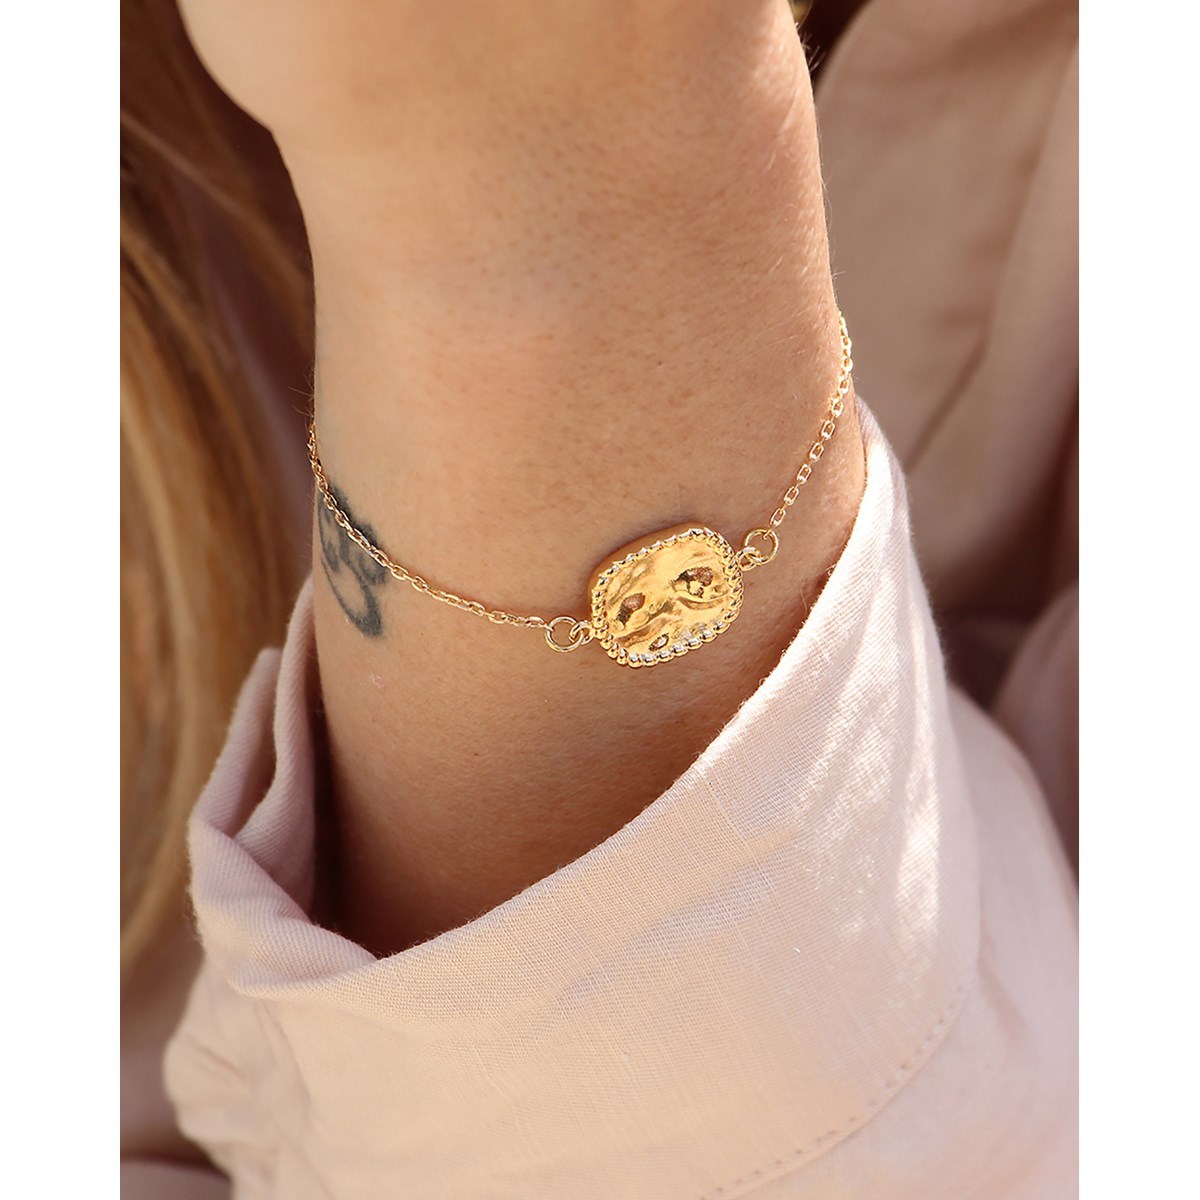 Bracelet ajustable médaille laiton doré or fin 24K SALLY - vue 3